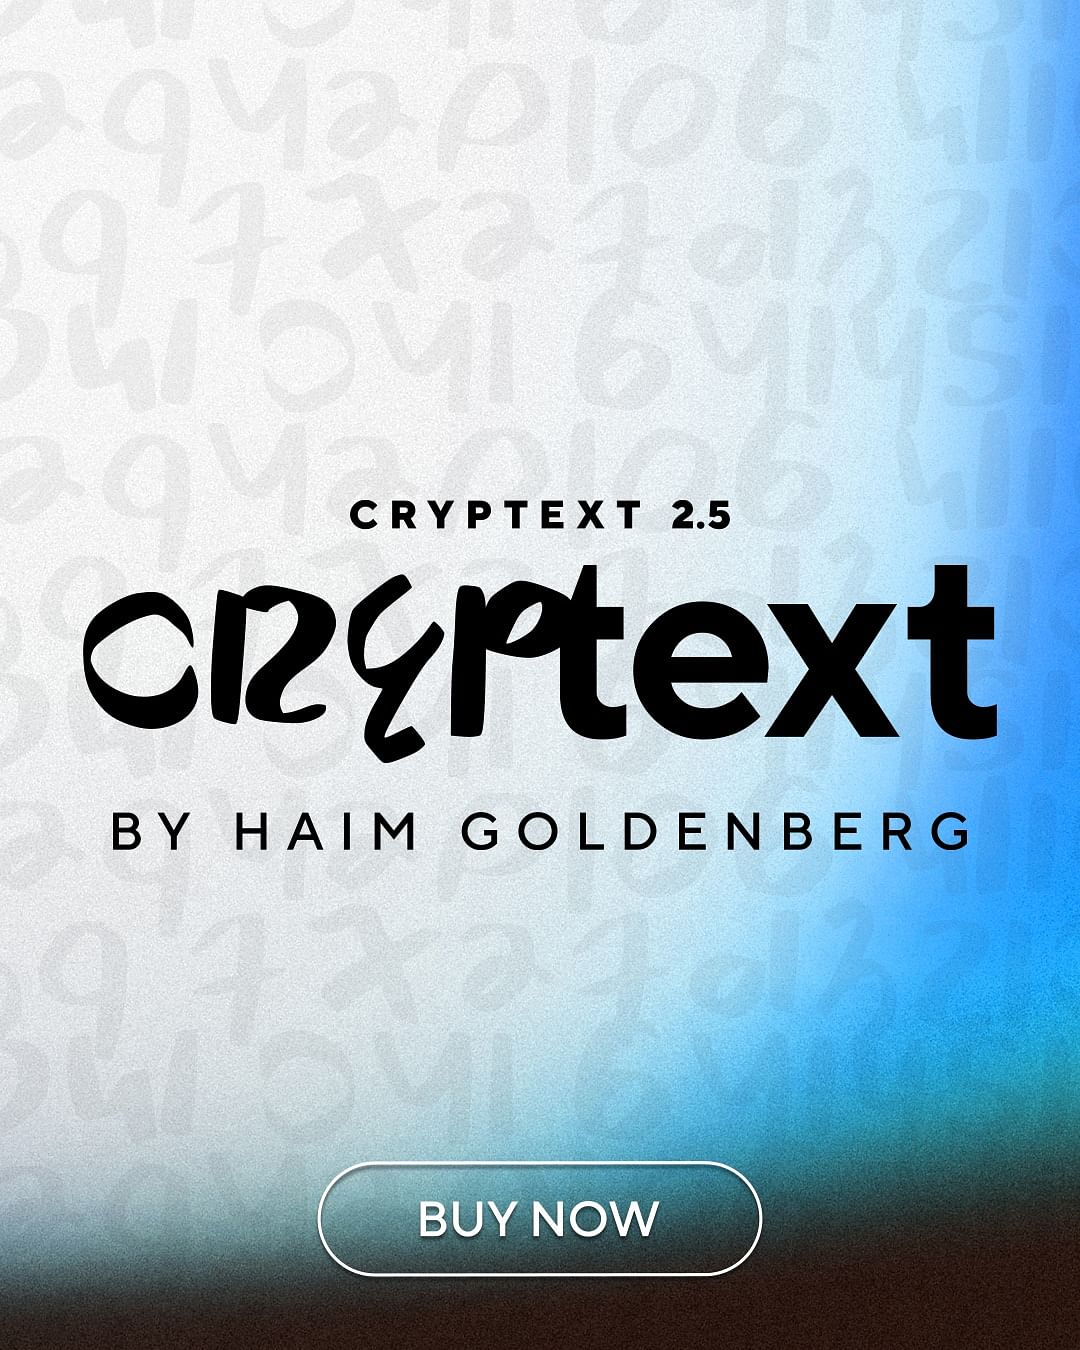 Cryptext 2.5